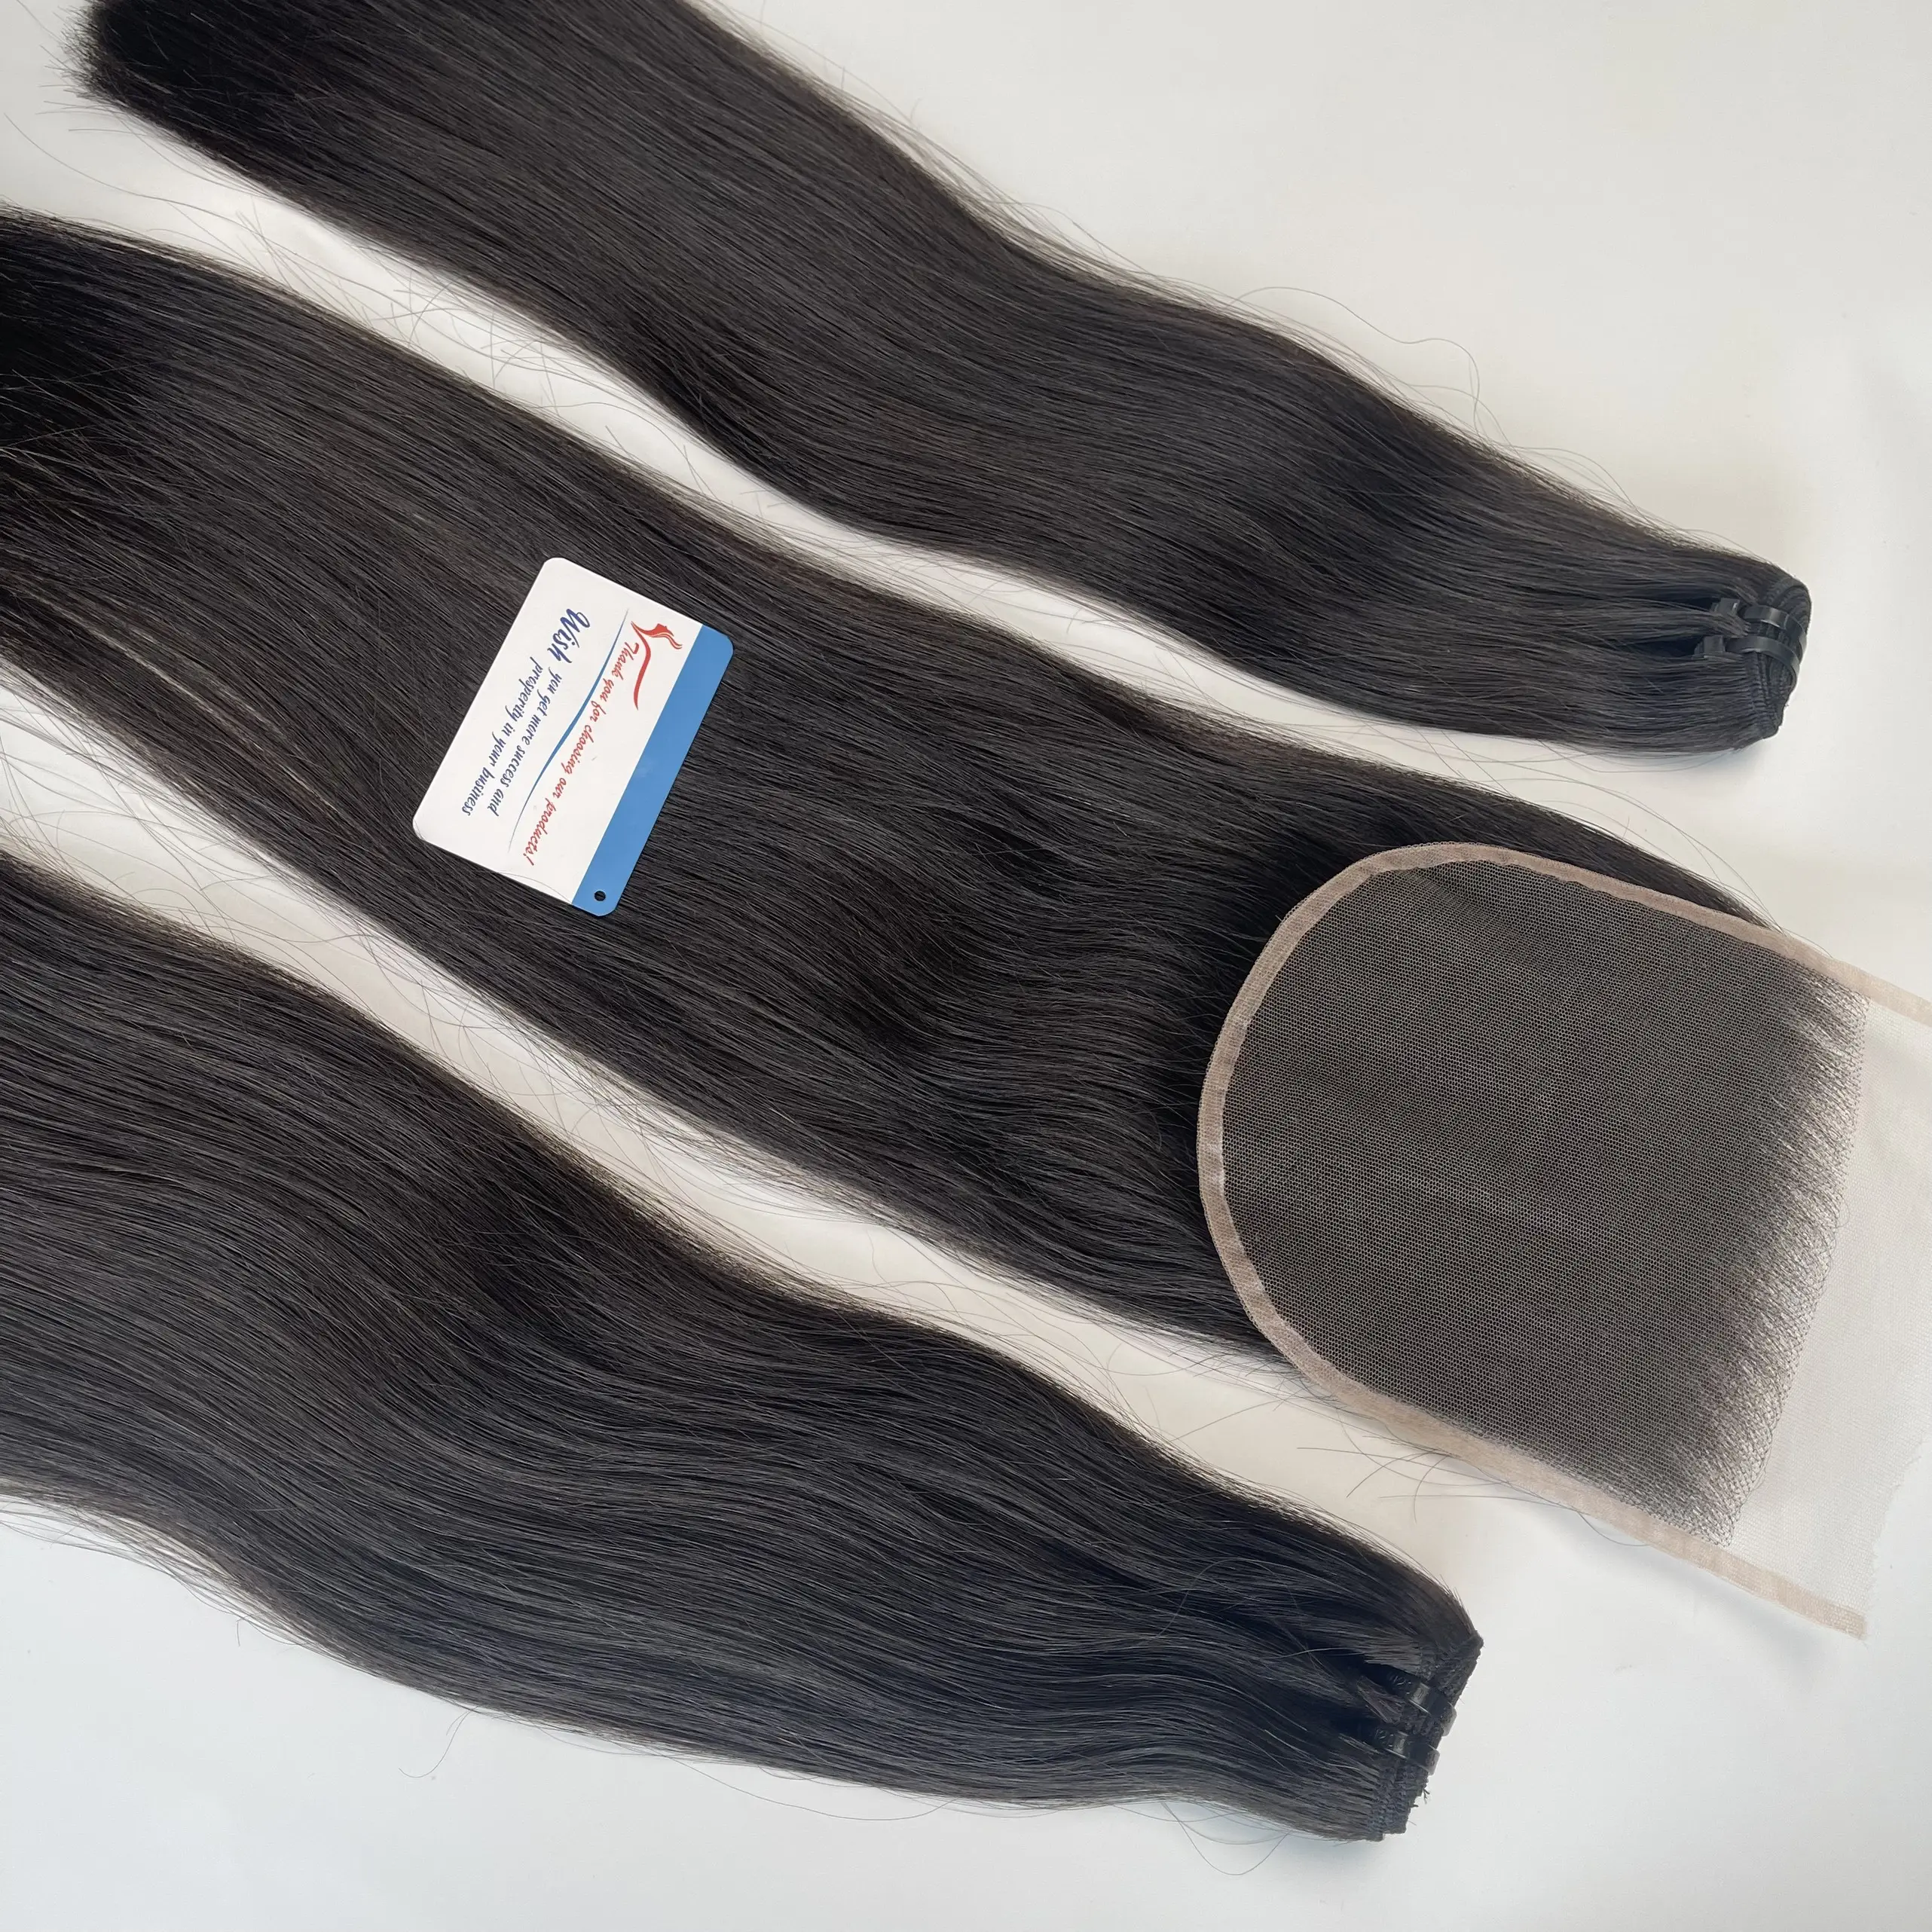 Прямые волосы с выровненными кутикулами, волосы Remy, вьетнамские 100% человеческие волосы, двойная вытяжка, необработанные натуральные необработанные волосы